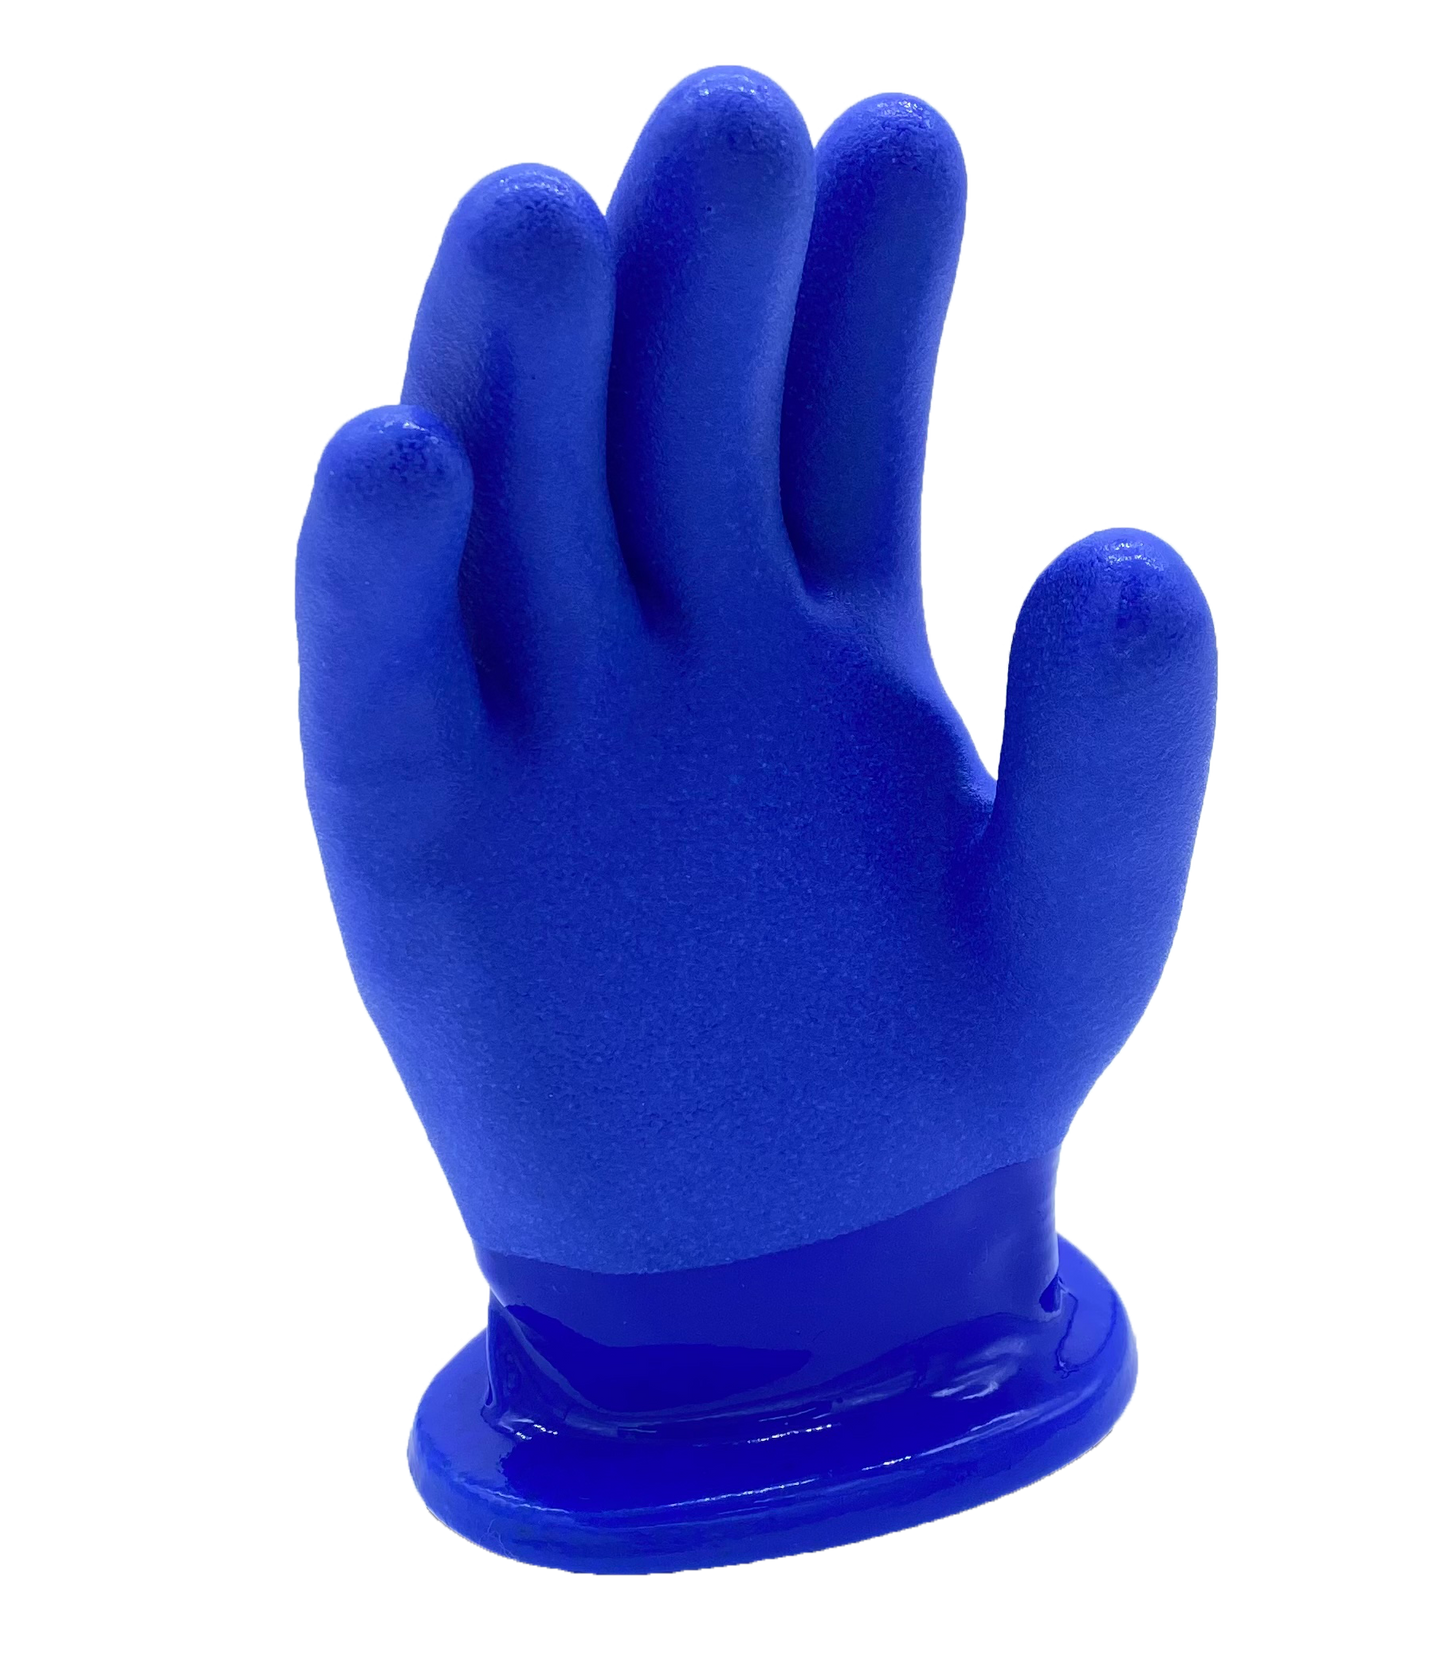 Showa 495 Mens Gloves (Pair)